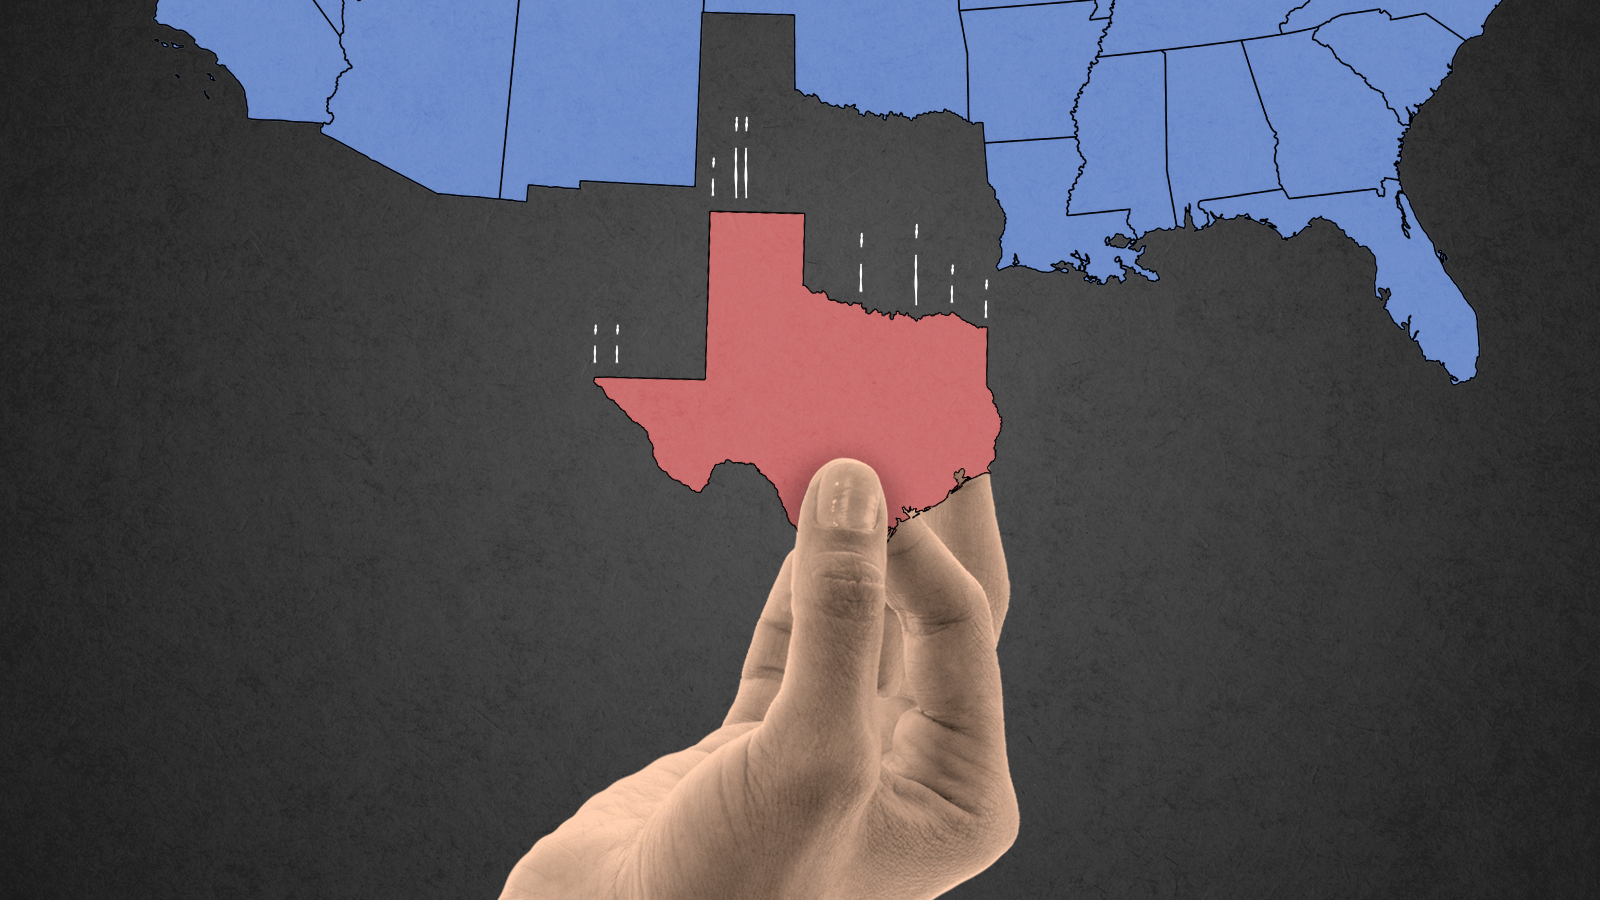 Texas secession.